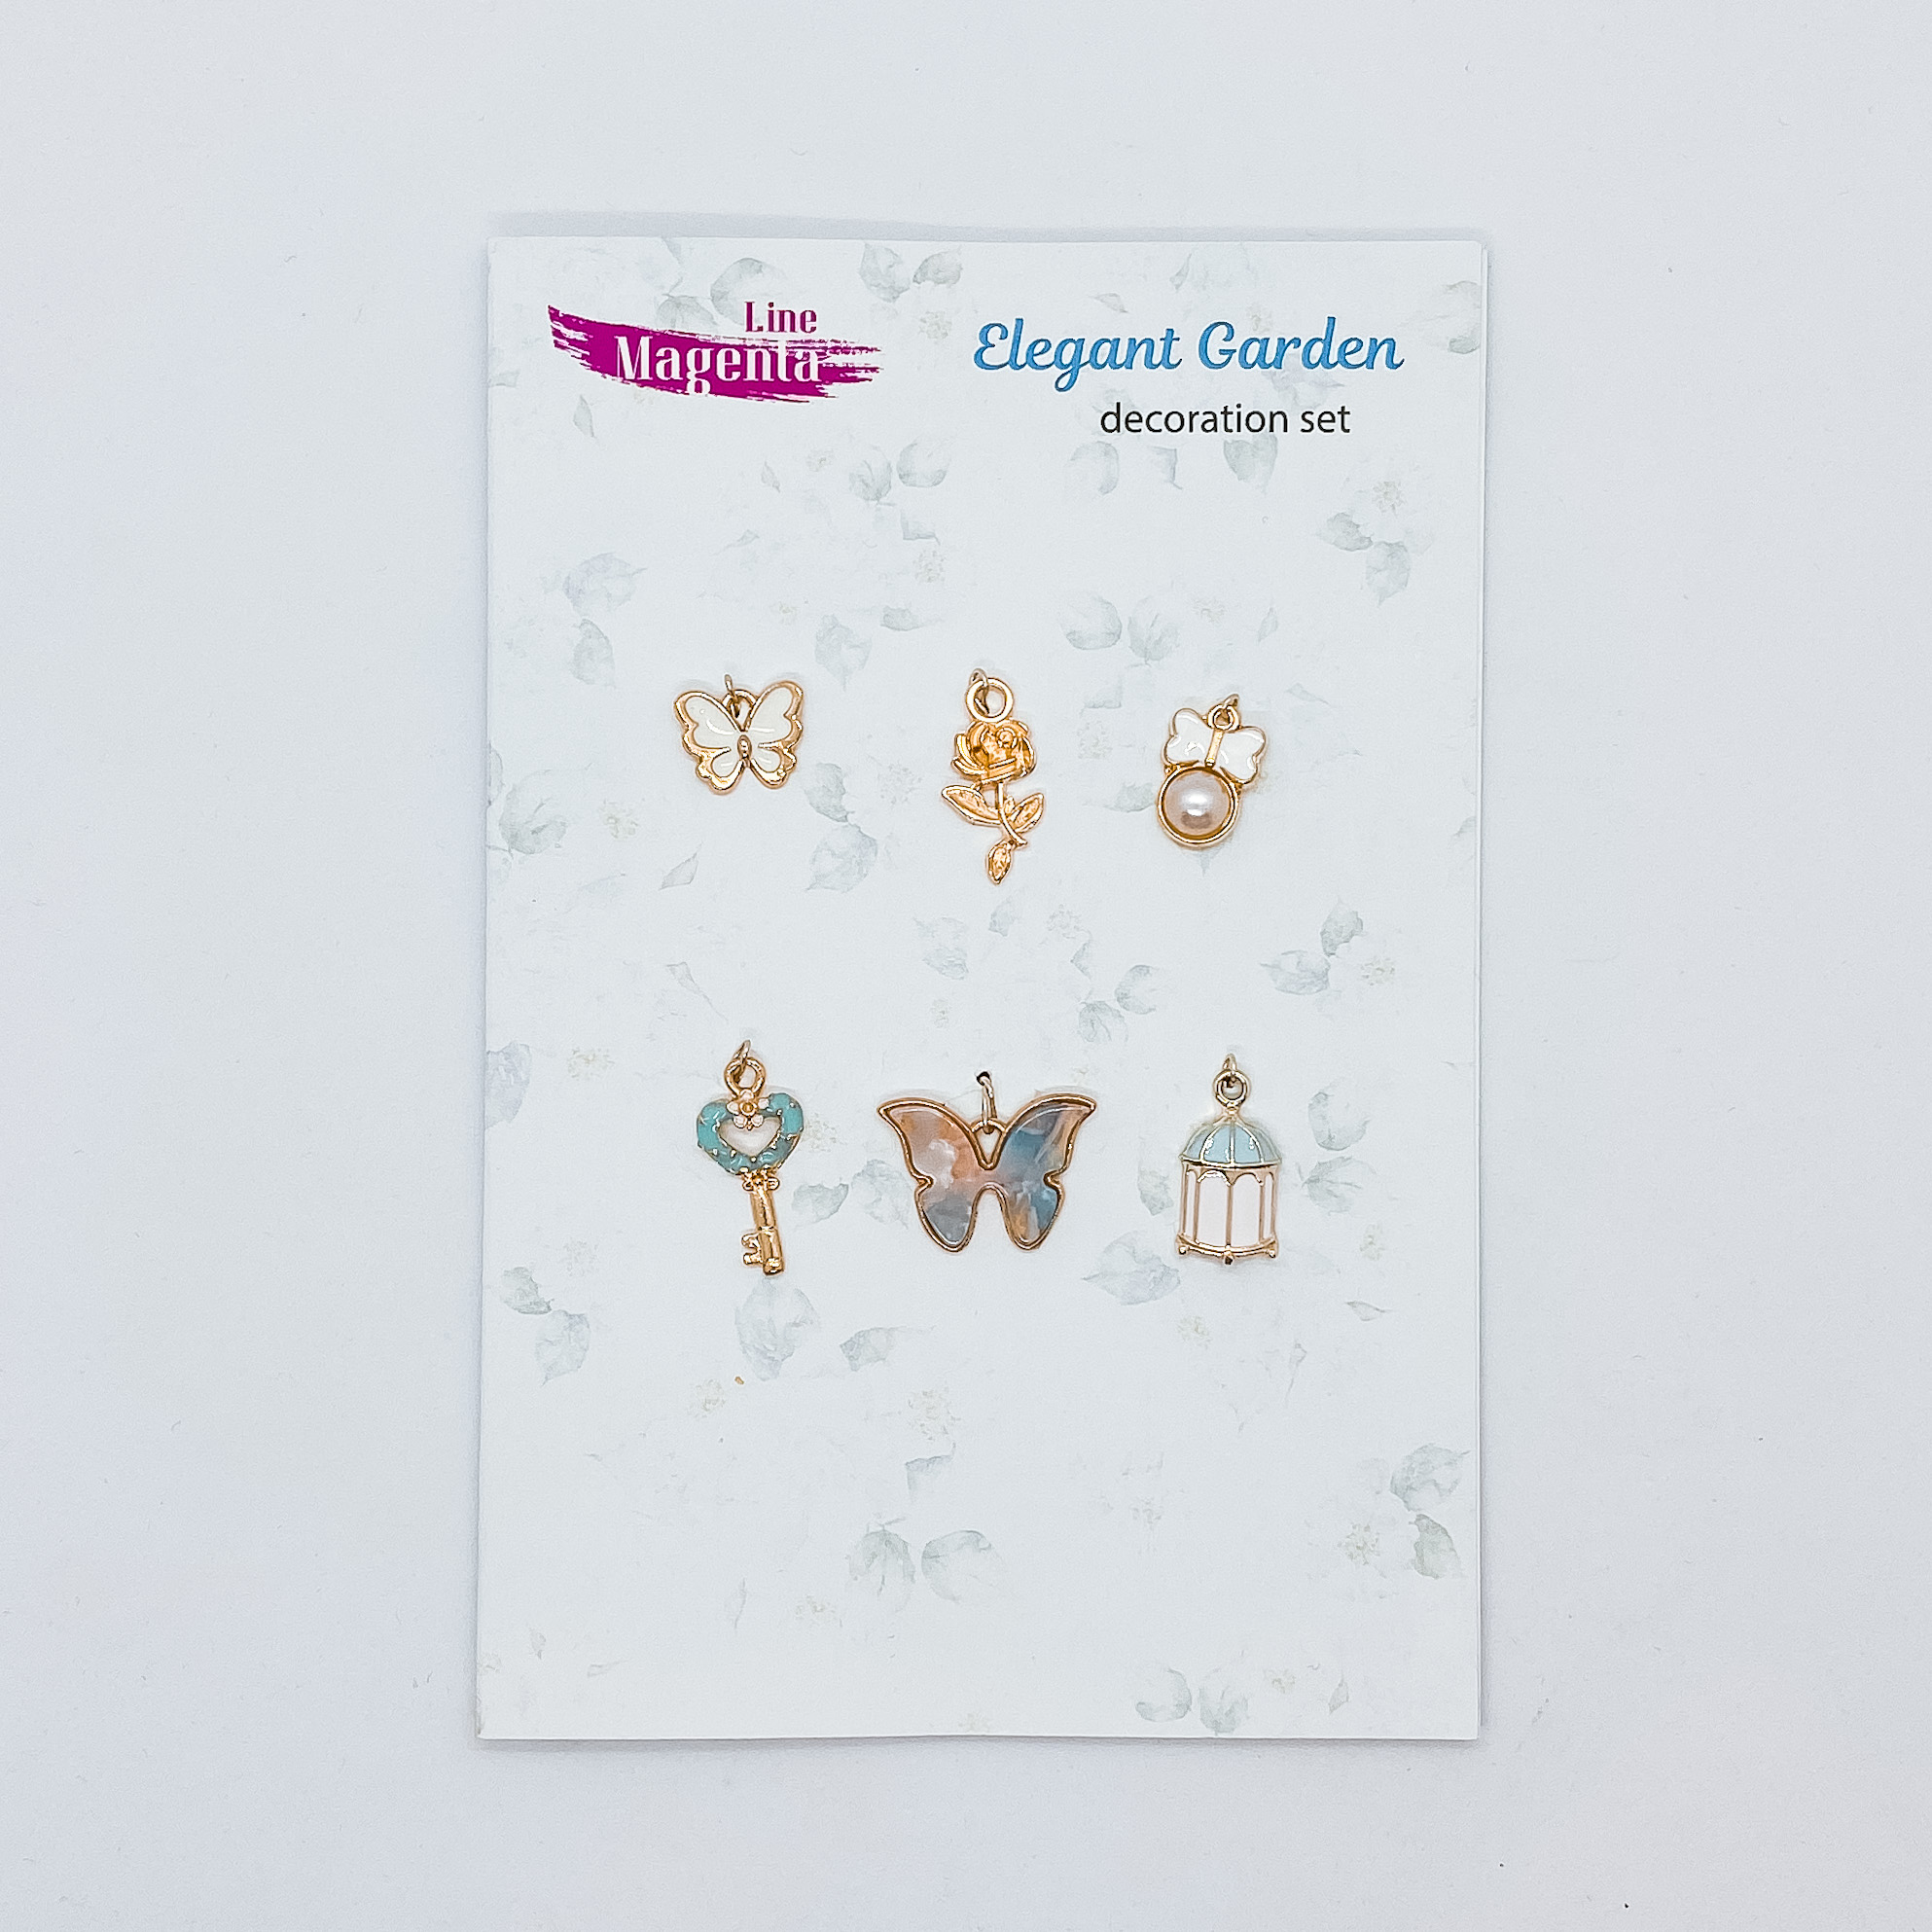 Набор декора для скрапбукинга, 6 элементов, Elegant Garden, Magenta Line